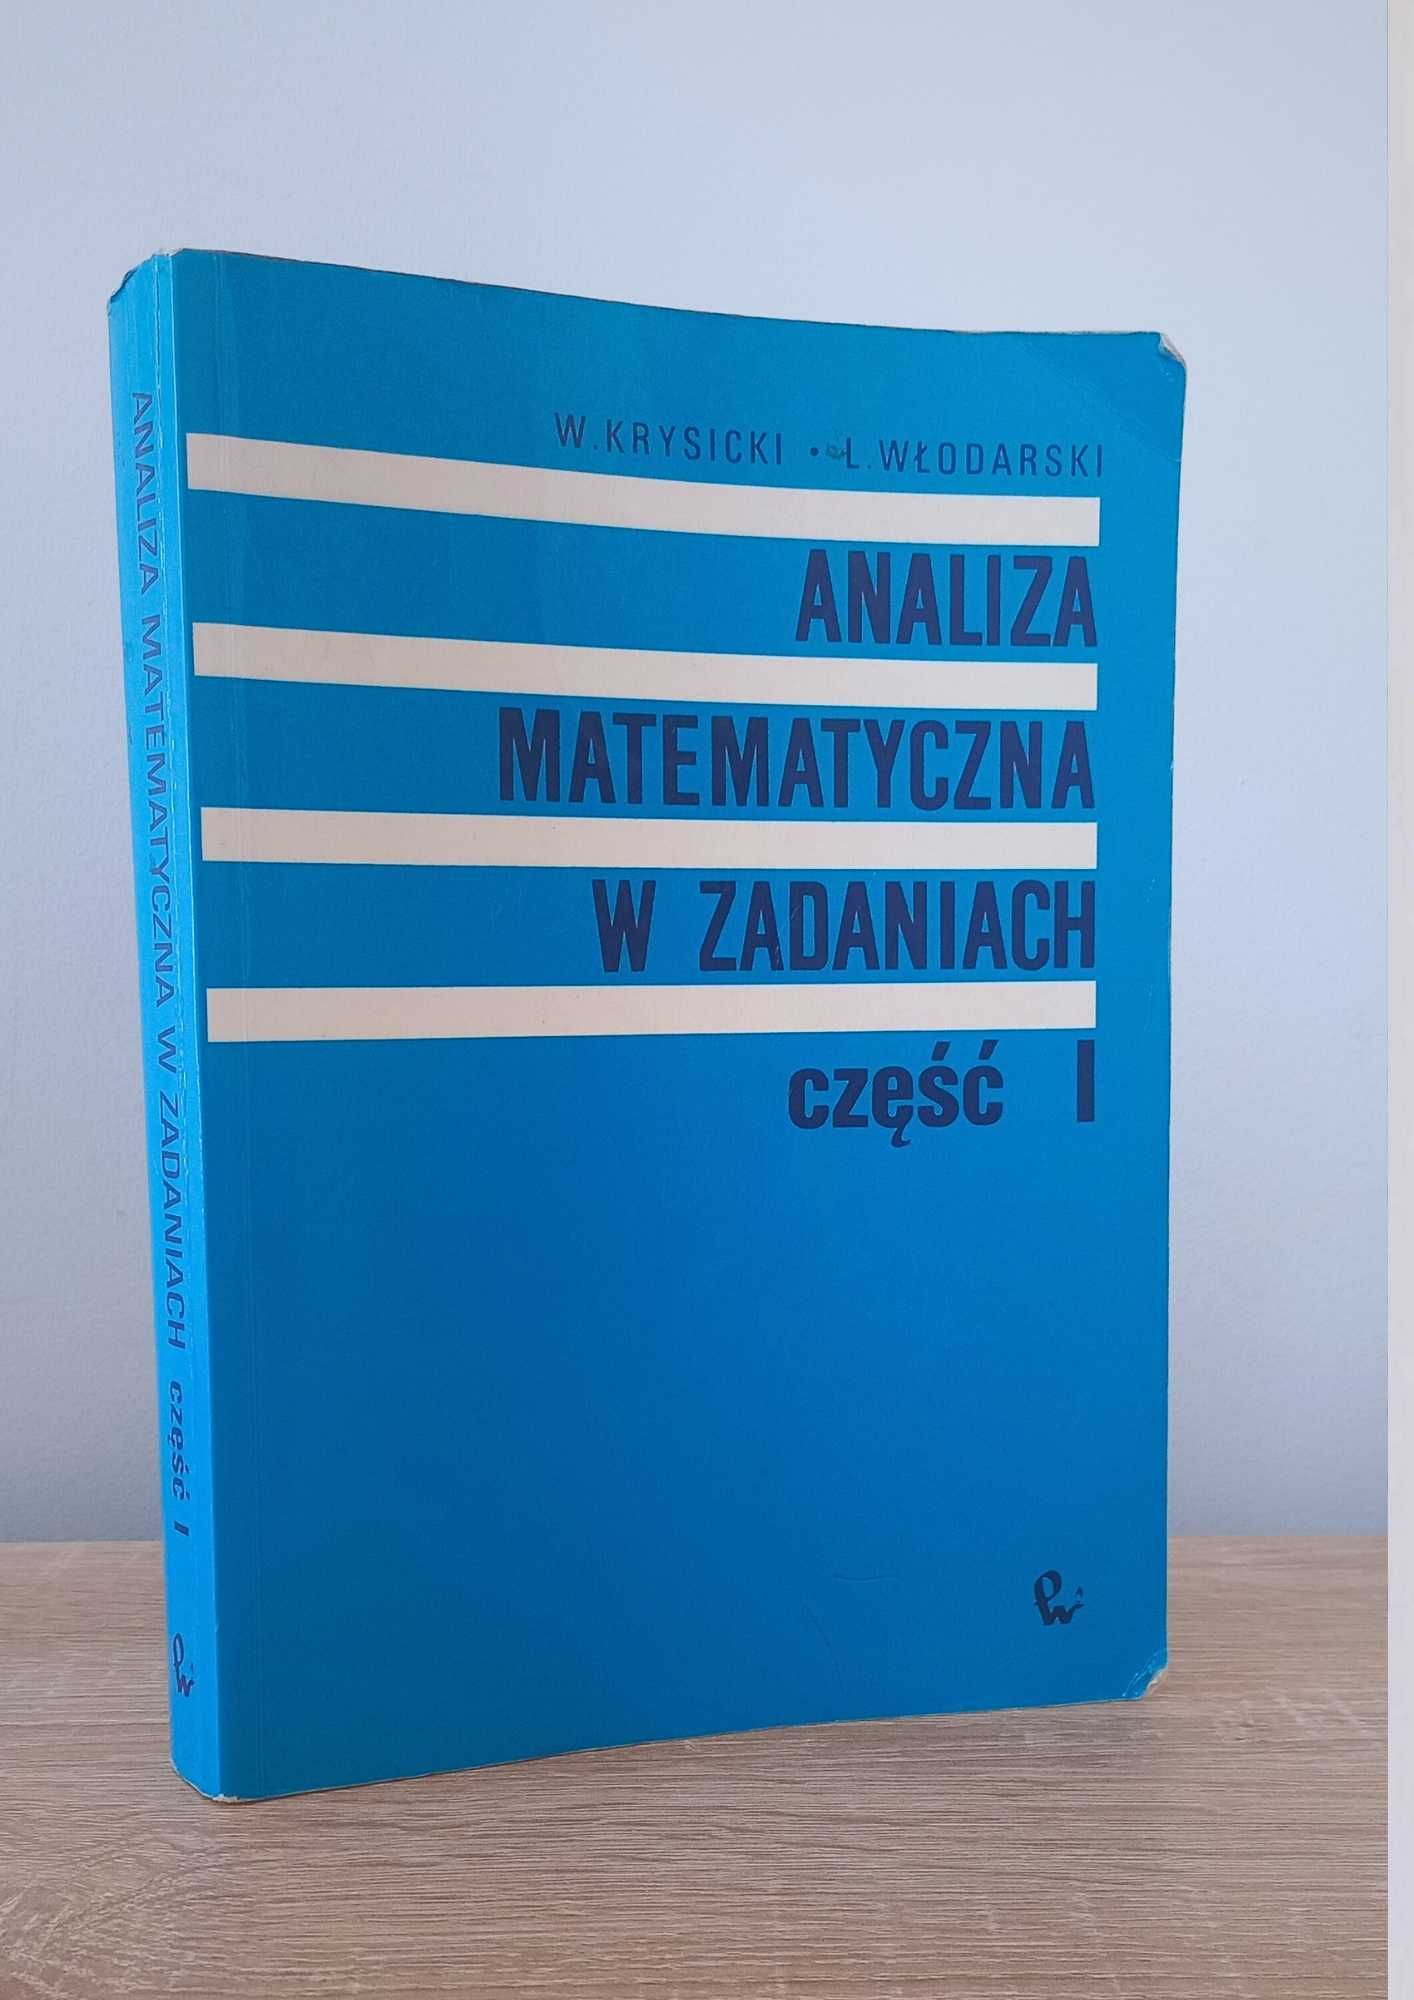 KSIĄŻKA "Matematyka w zadaniach" - część 1 Krysicki, Włodarski